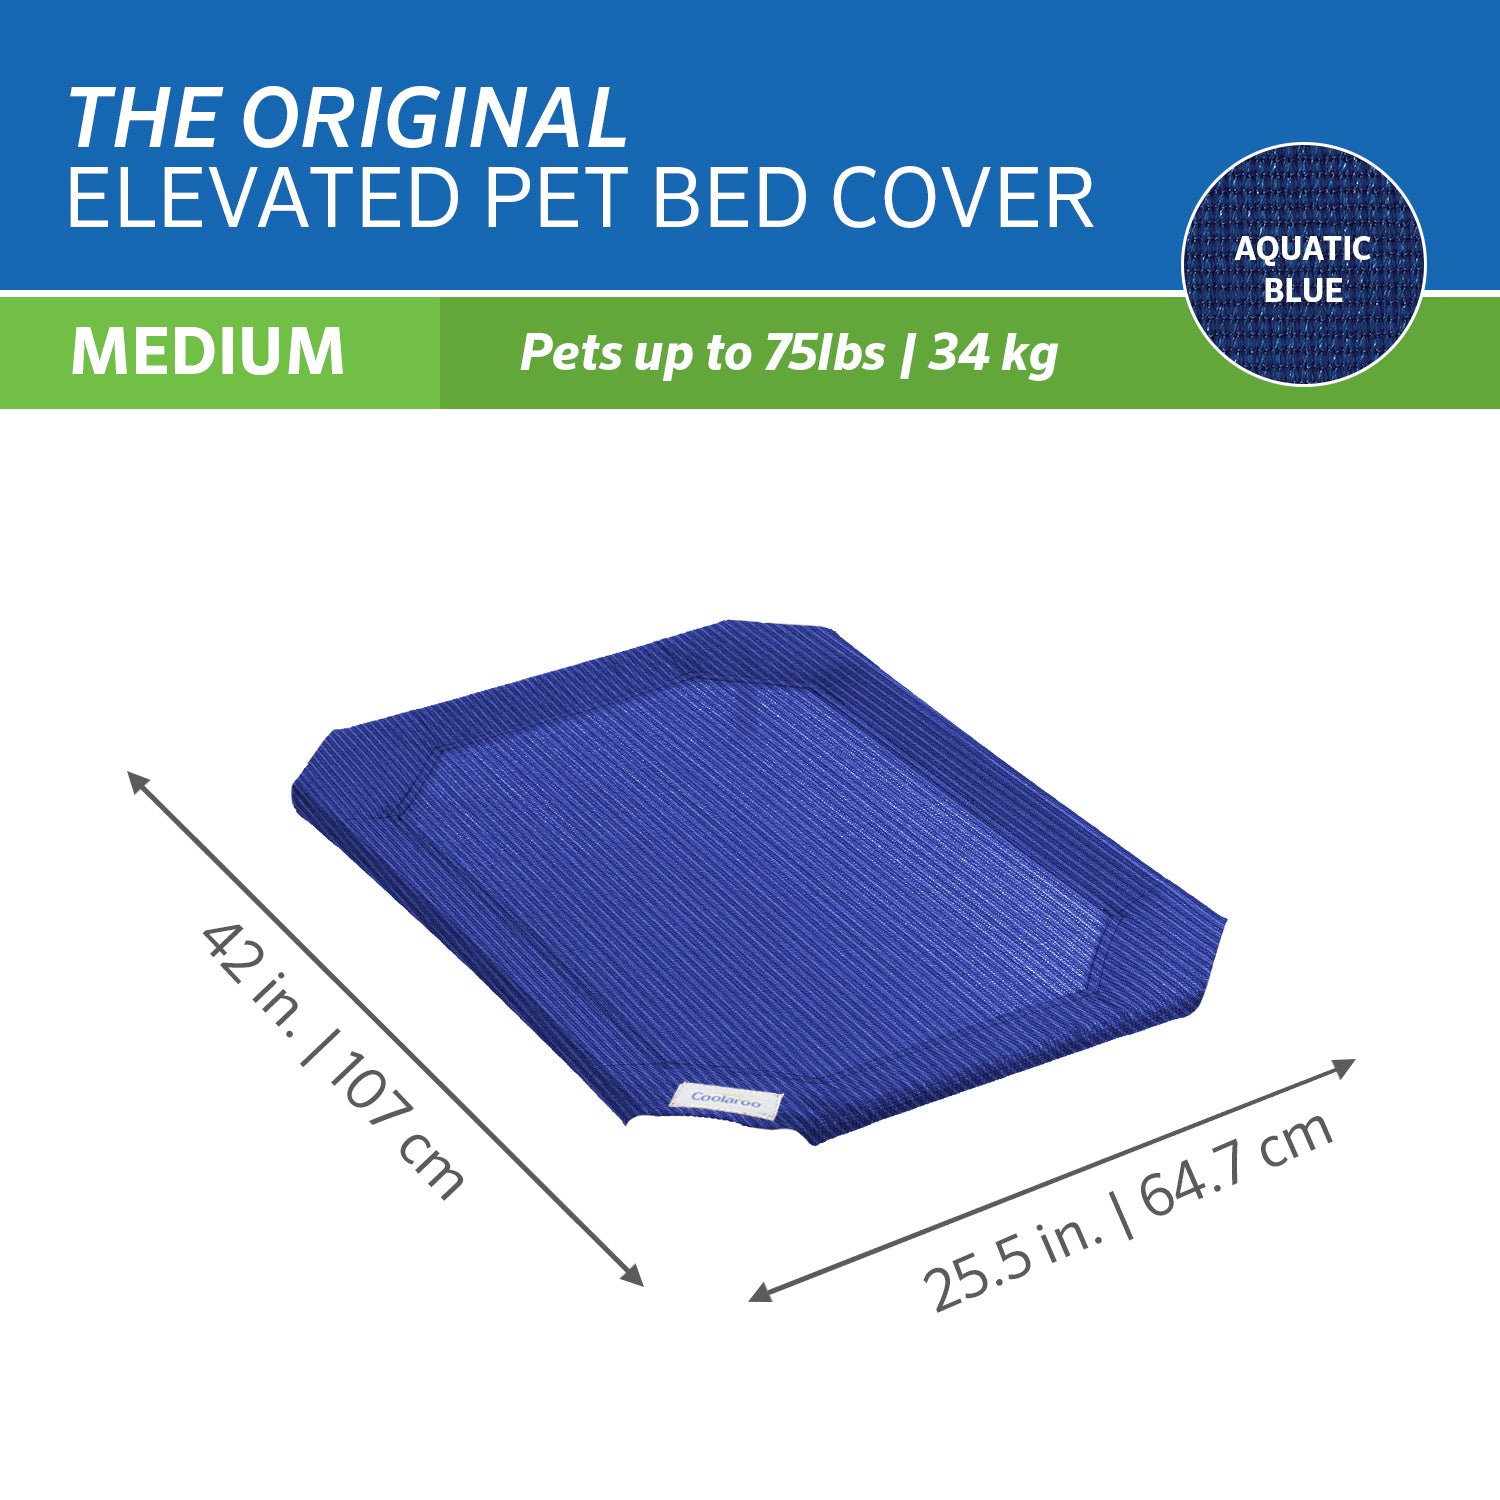 The Original Coolaroo Elevated Pet Dog Bed Replacement Cover， Medium， Aquatic Blue